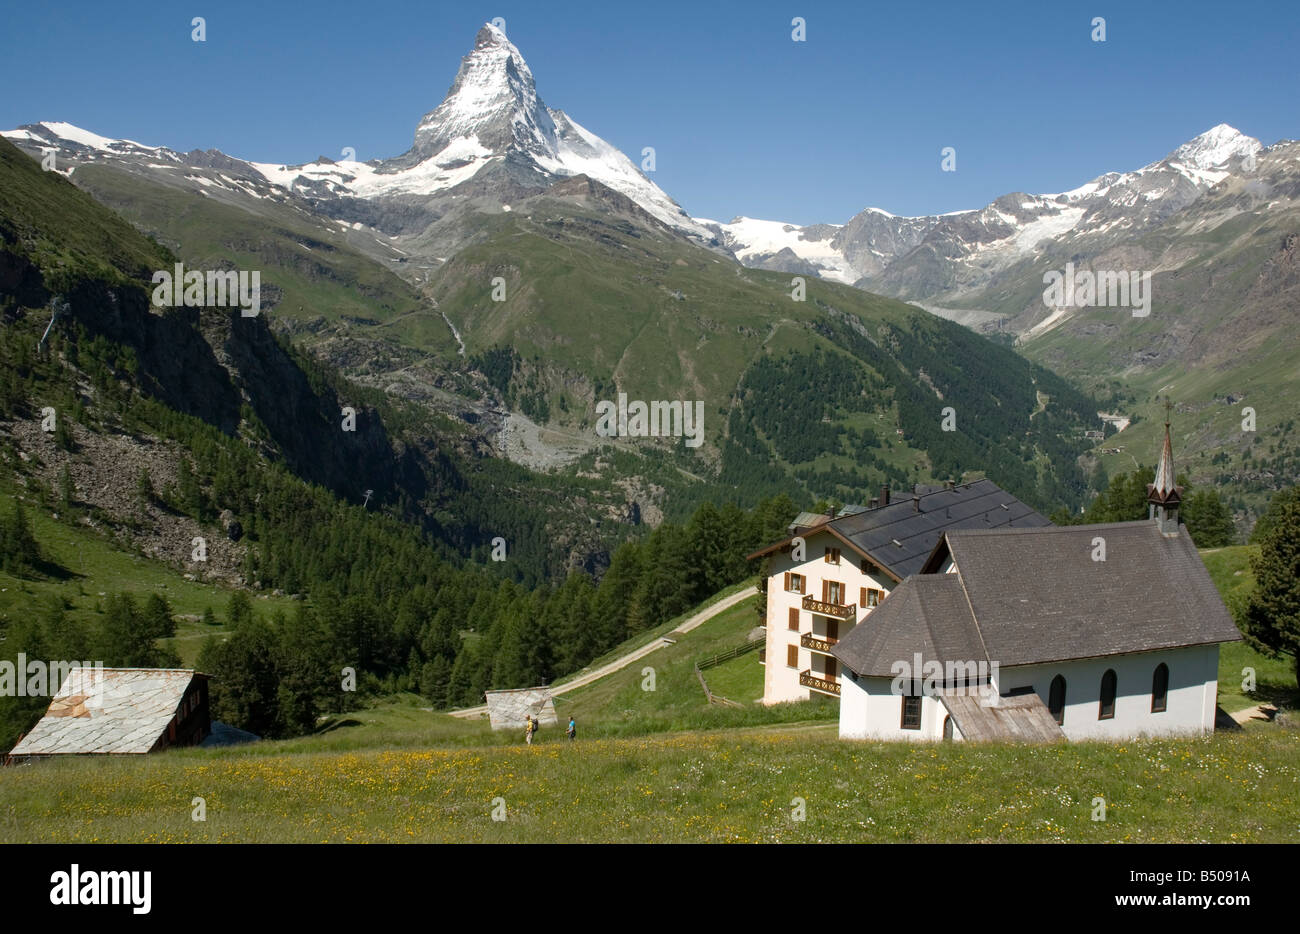 Zich voorstellen veerboot het kan Matterhorn at the horizon hi-res stock photography and images - Alamy